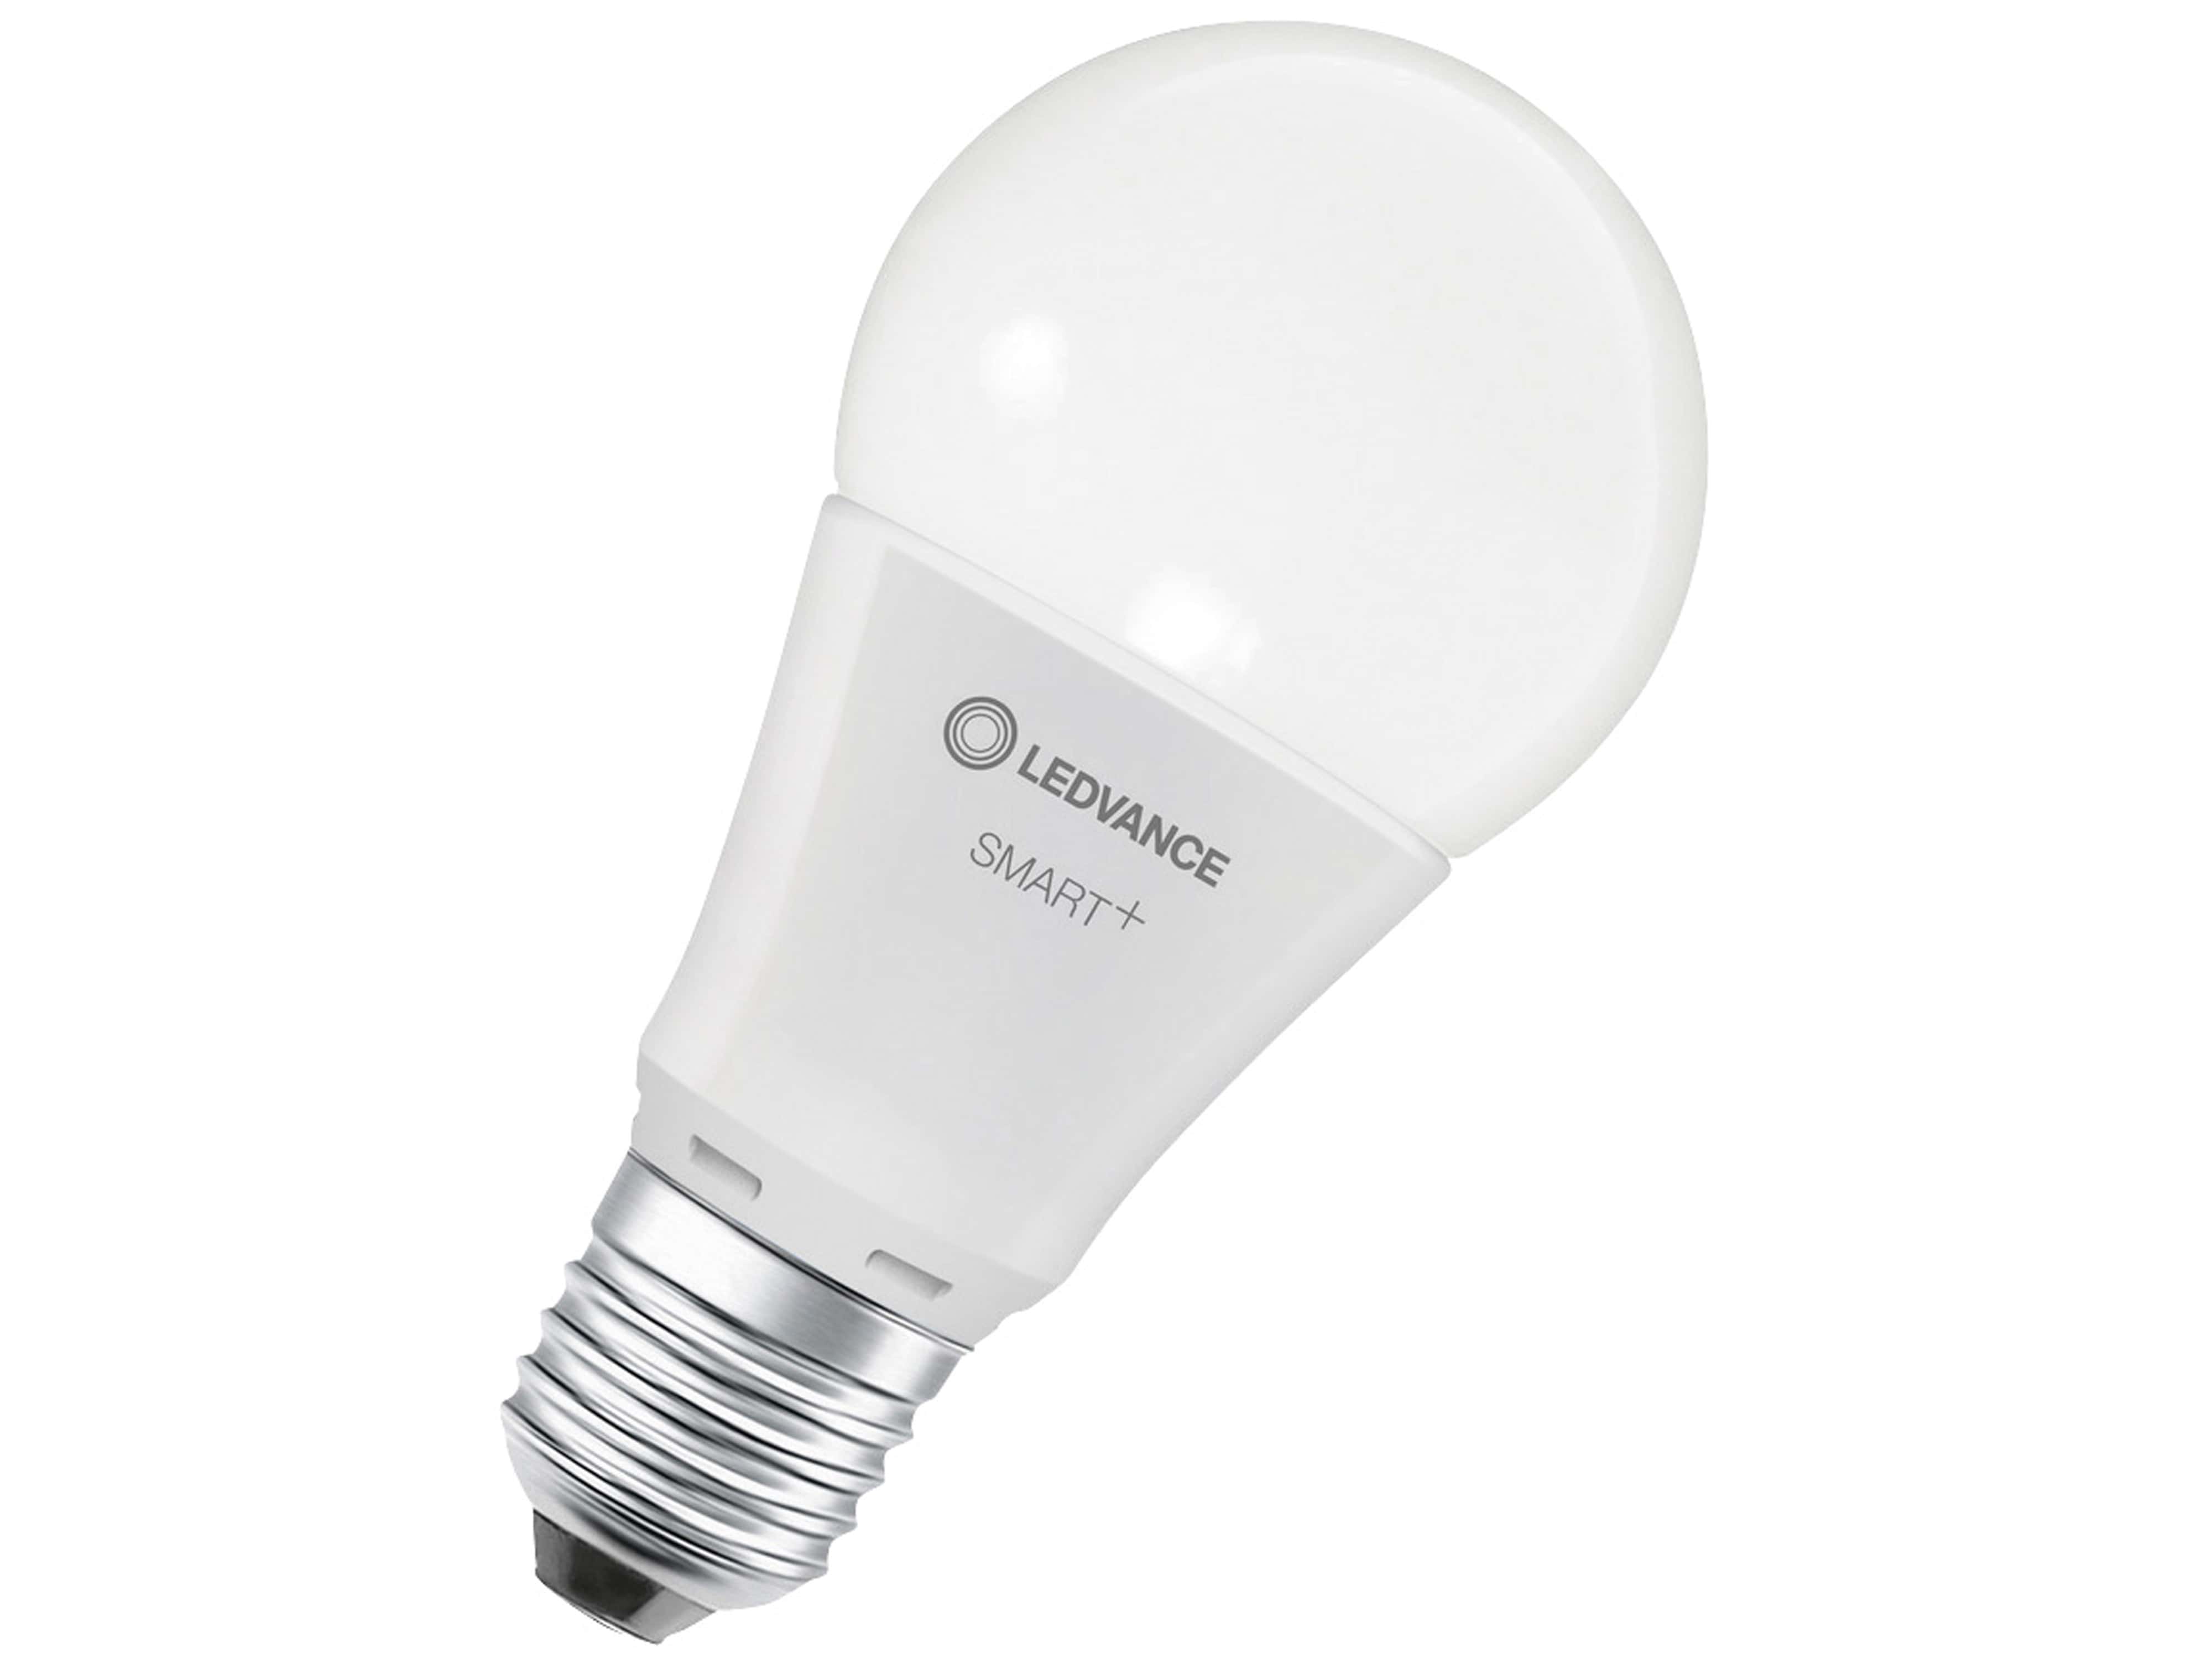 LEDVANCE LED-Lampe SMART+ WiFi Classic, A60, E27, EEK: F, 9 W, 806 lm, 2700…6500 K, Smart